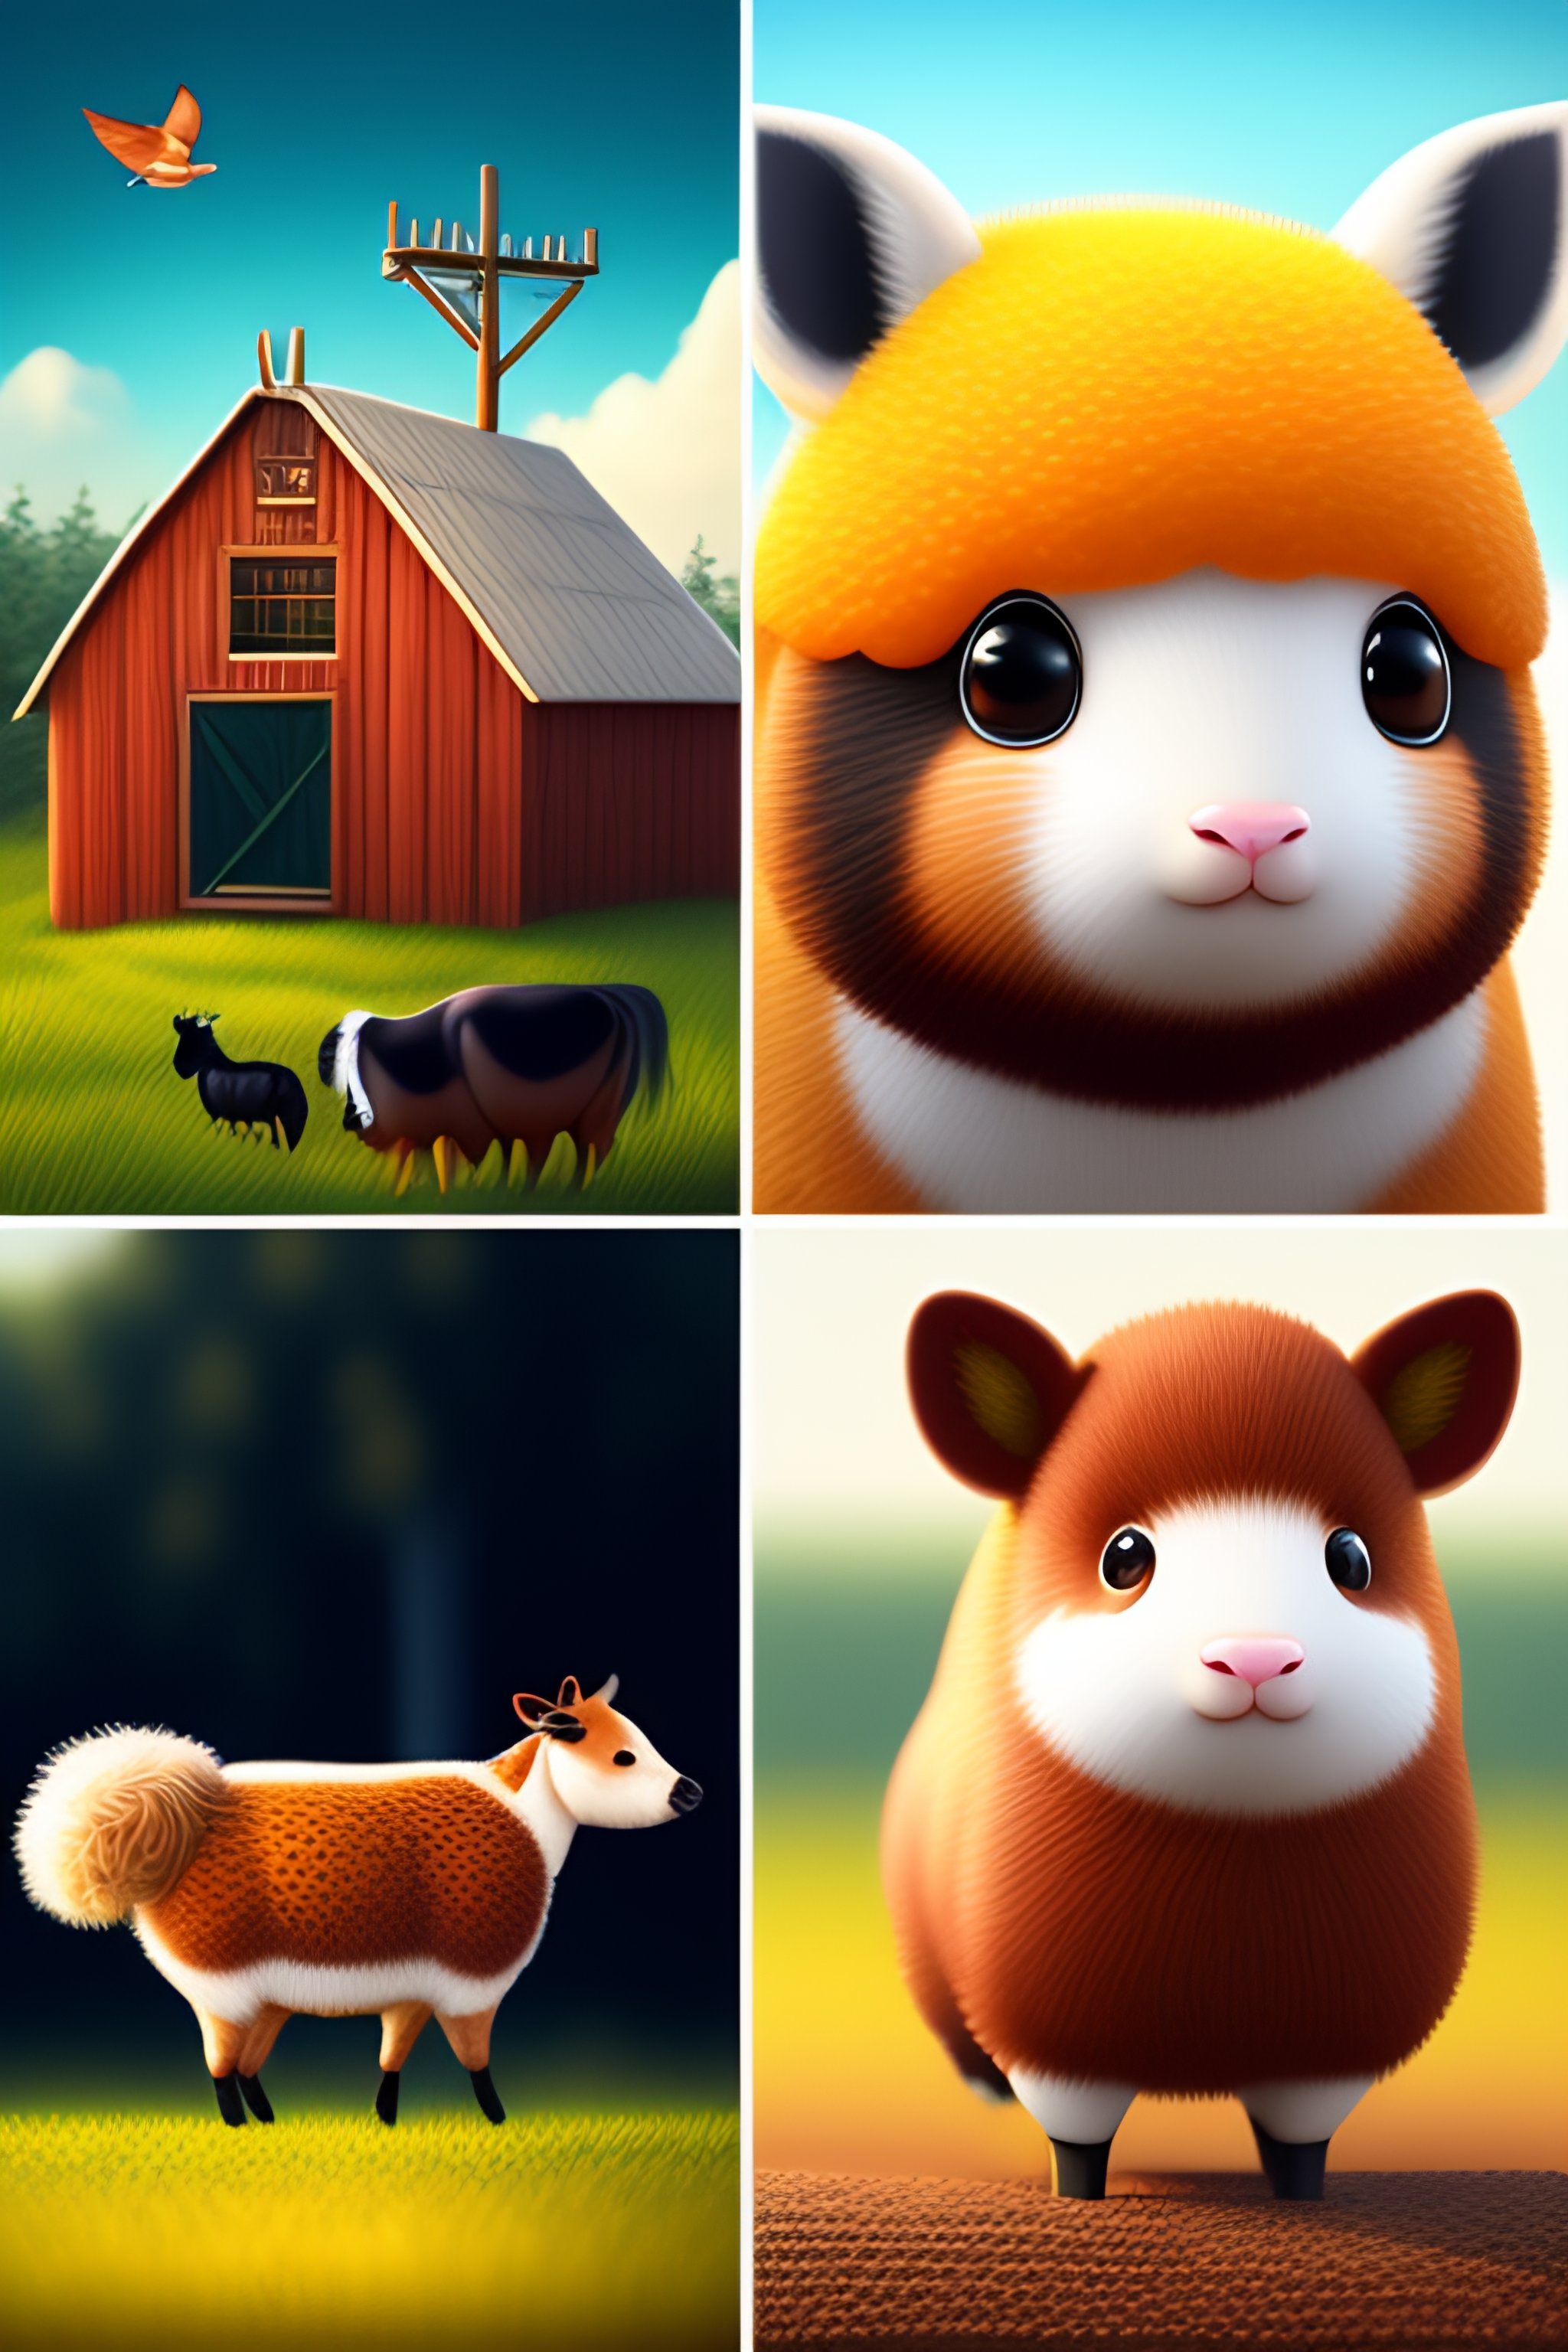 Lexica - Kawaii style farm animals